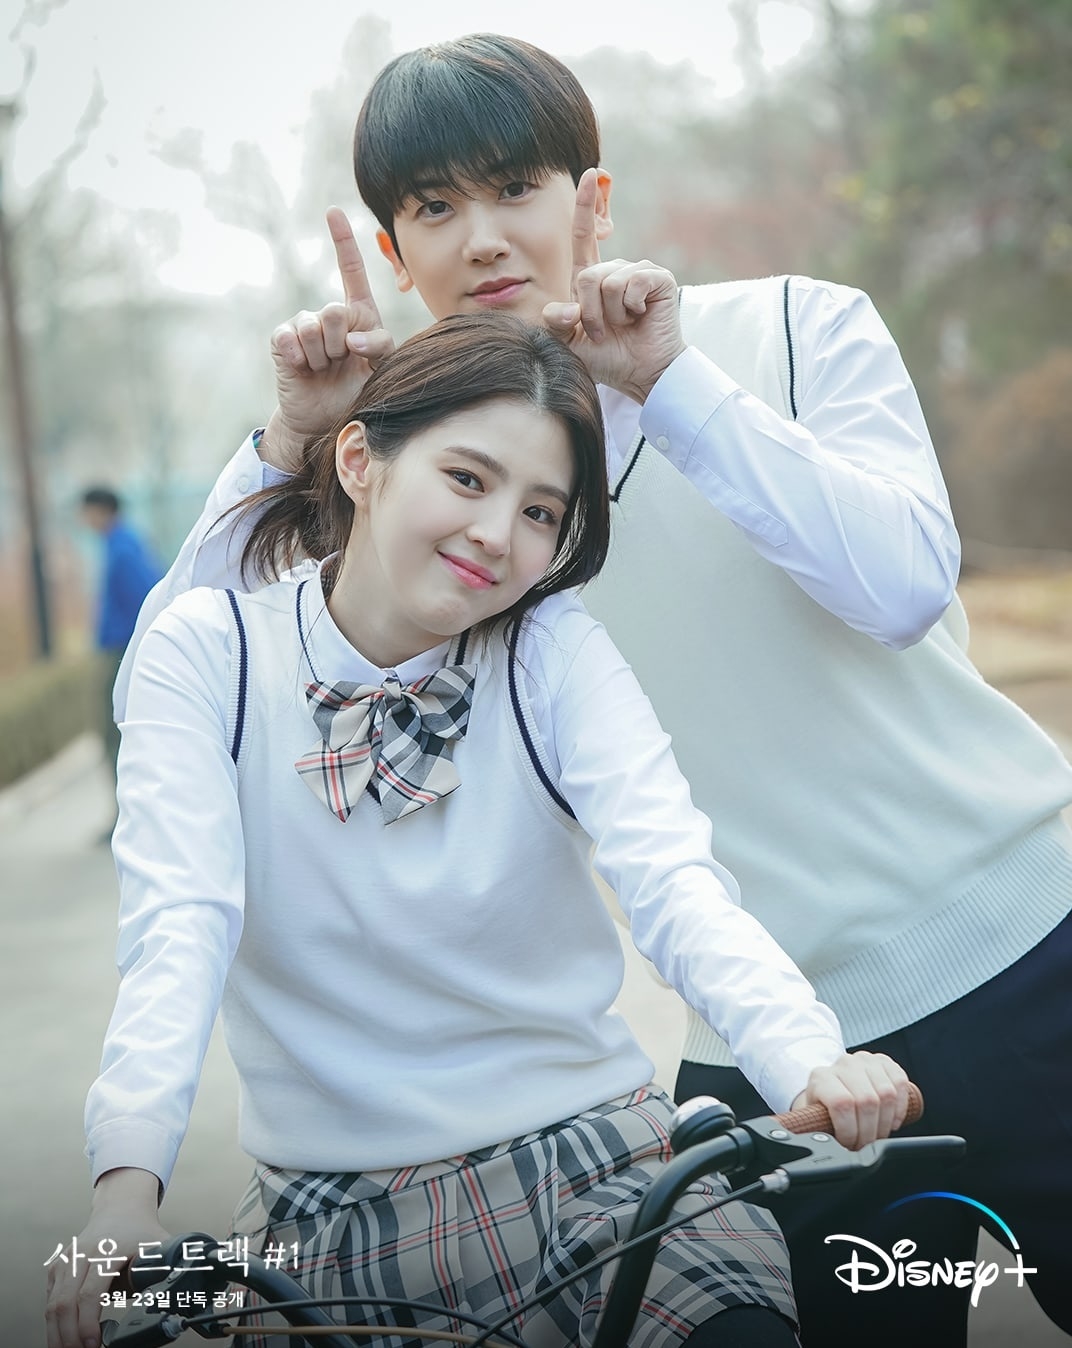 Sao Hàn ngày 23/3/2022: Park Hyung Sik, Han So Hee hóa cặp đôi siêu ngọt ngào trong “Soundtrack #1”